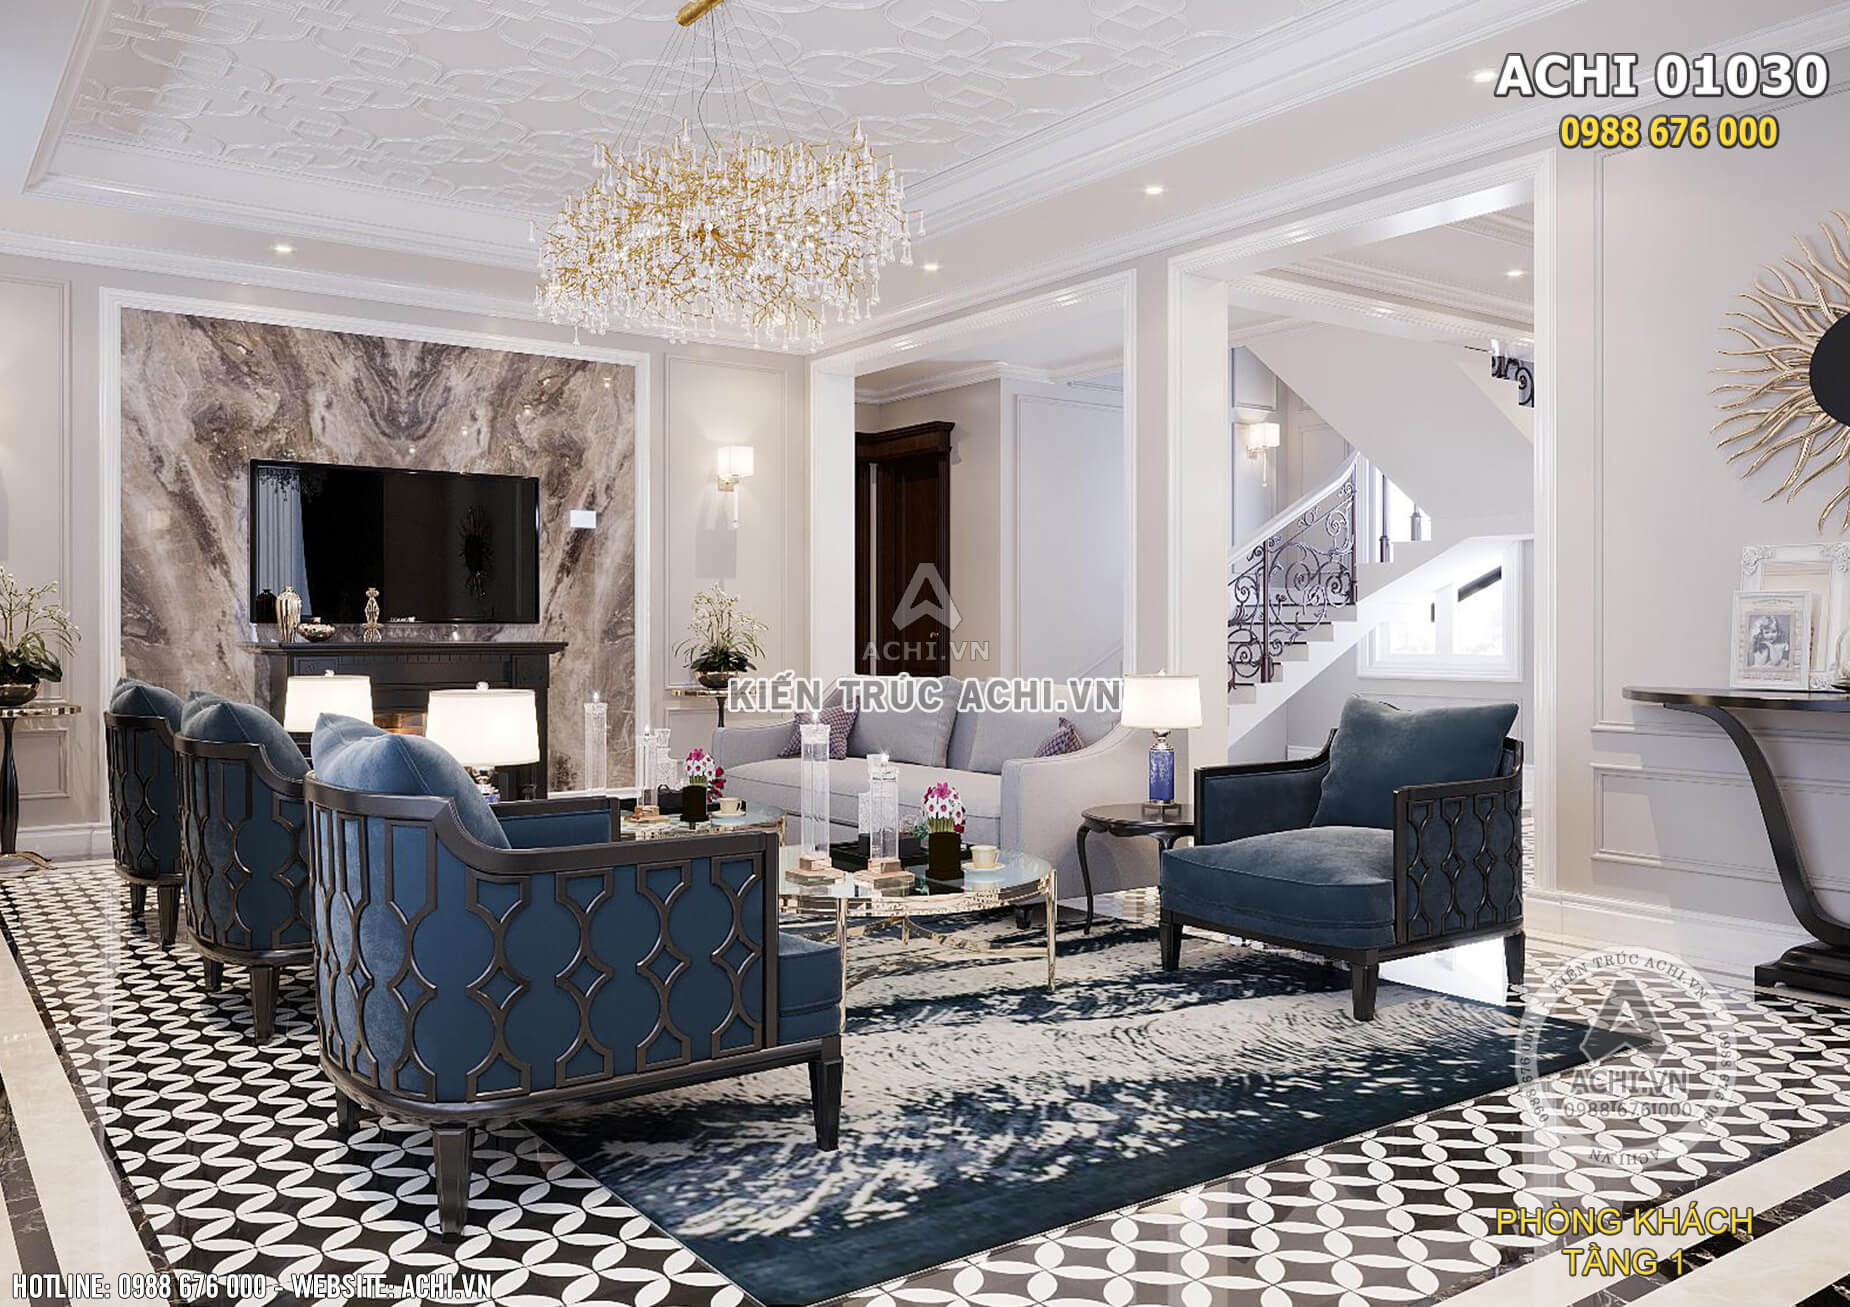 Thiết kế nội thất phòng khách theo phong cách tân cổ điển kết hợp hiện đại